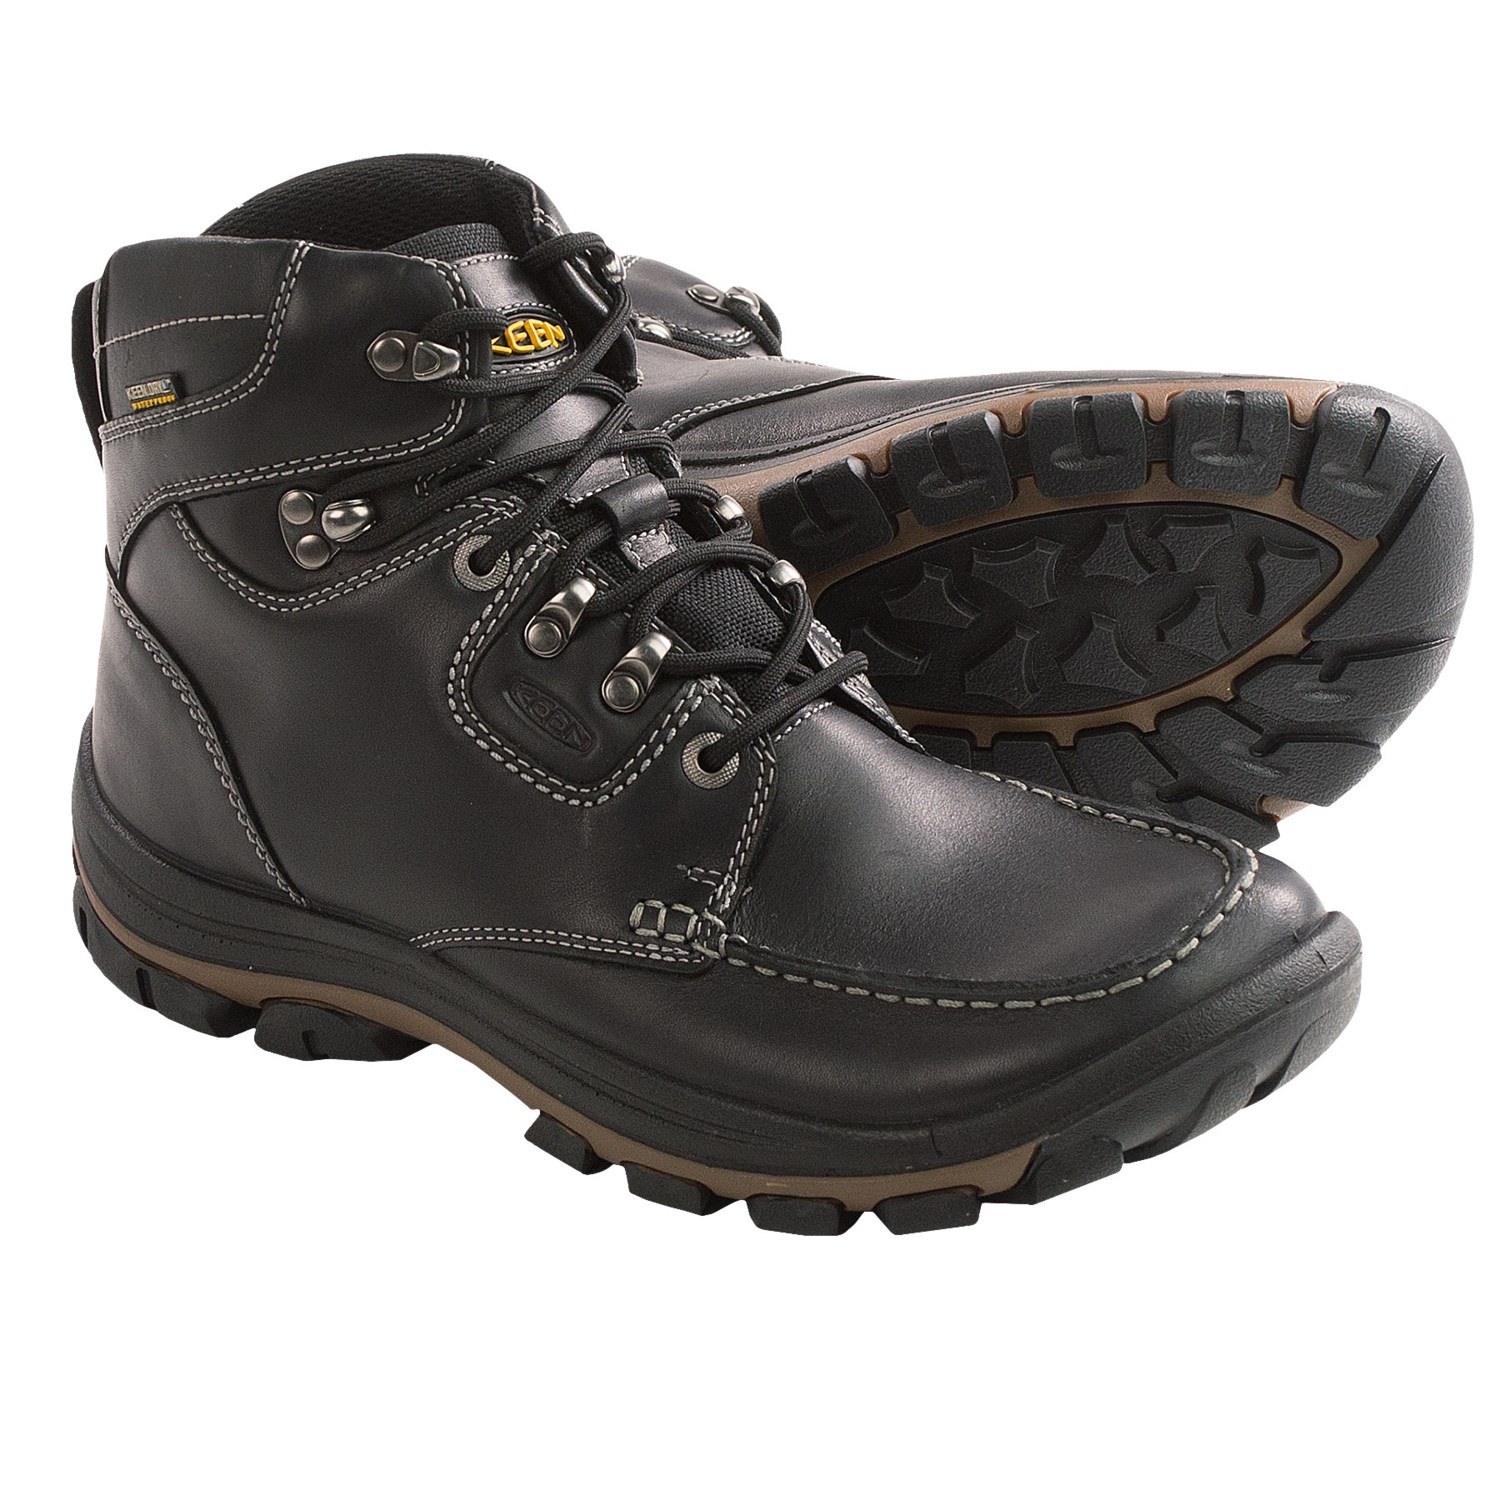 Keen NoPo Boots - Waterproof (For Men) in Black Full Grain